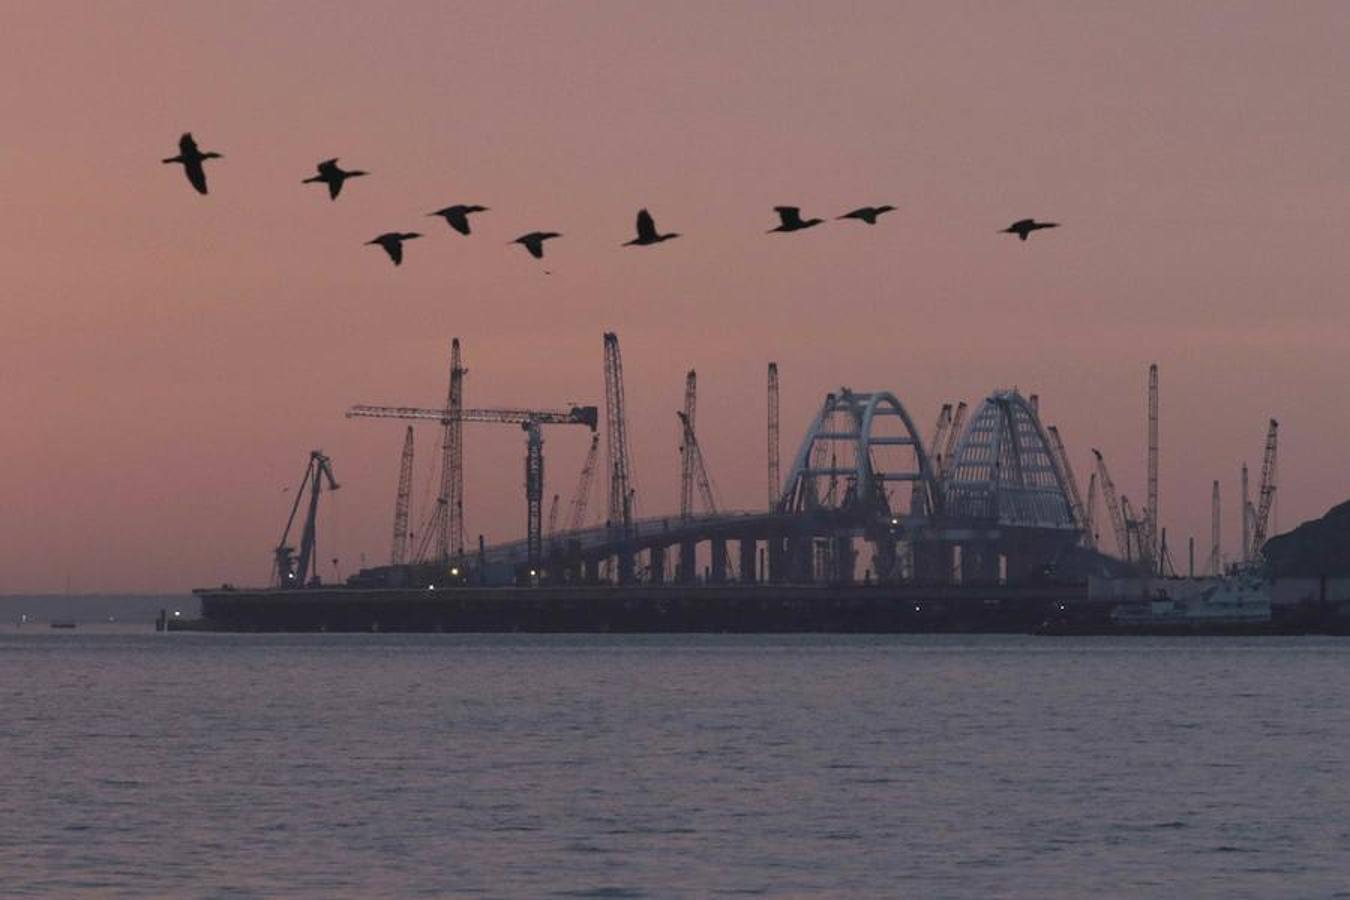  Con el objetivo ce conectar el continente ruso con la península de Crimea, así se están llevando a cabo las obras de un puente de carretera en el estrecho de Kerch (Crimea)